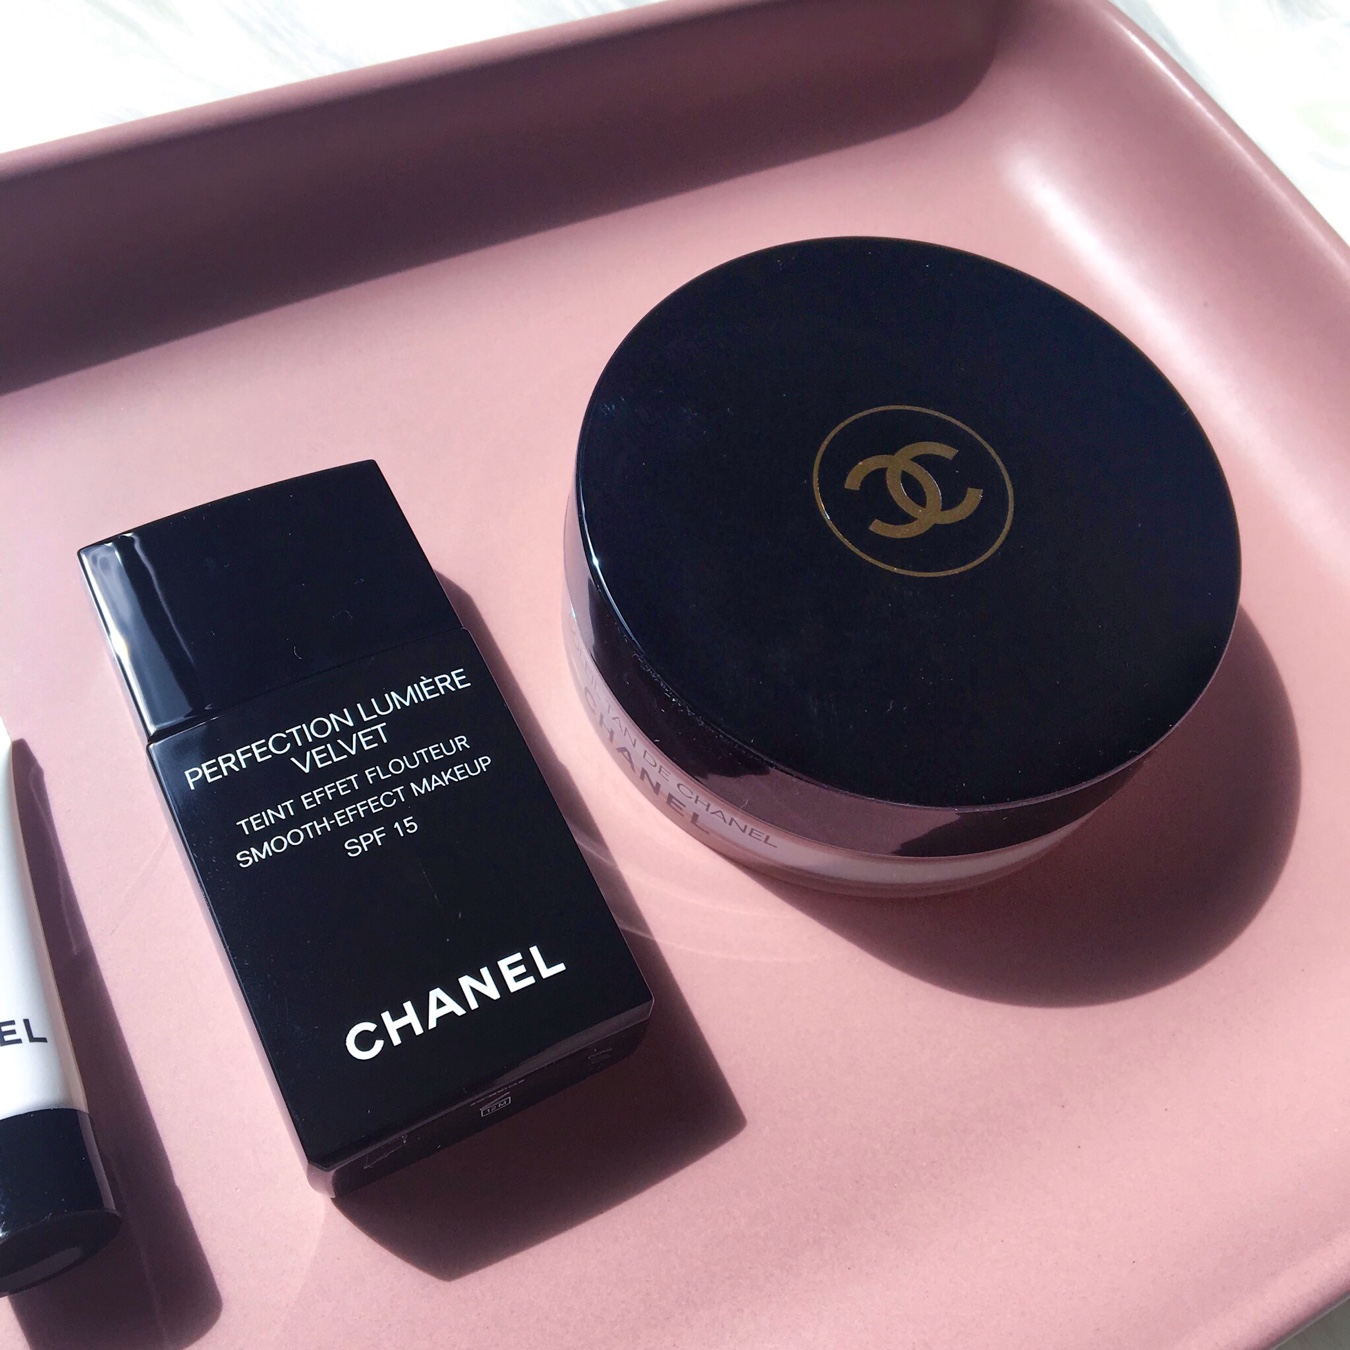 Chanel Perfection Lumiere Velvet and Soleil Tan De Chanel